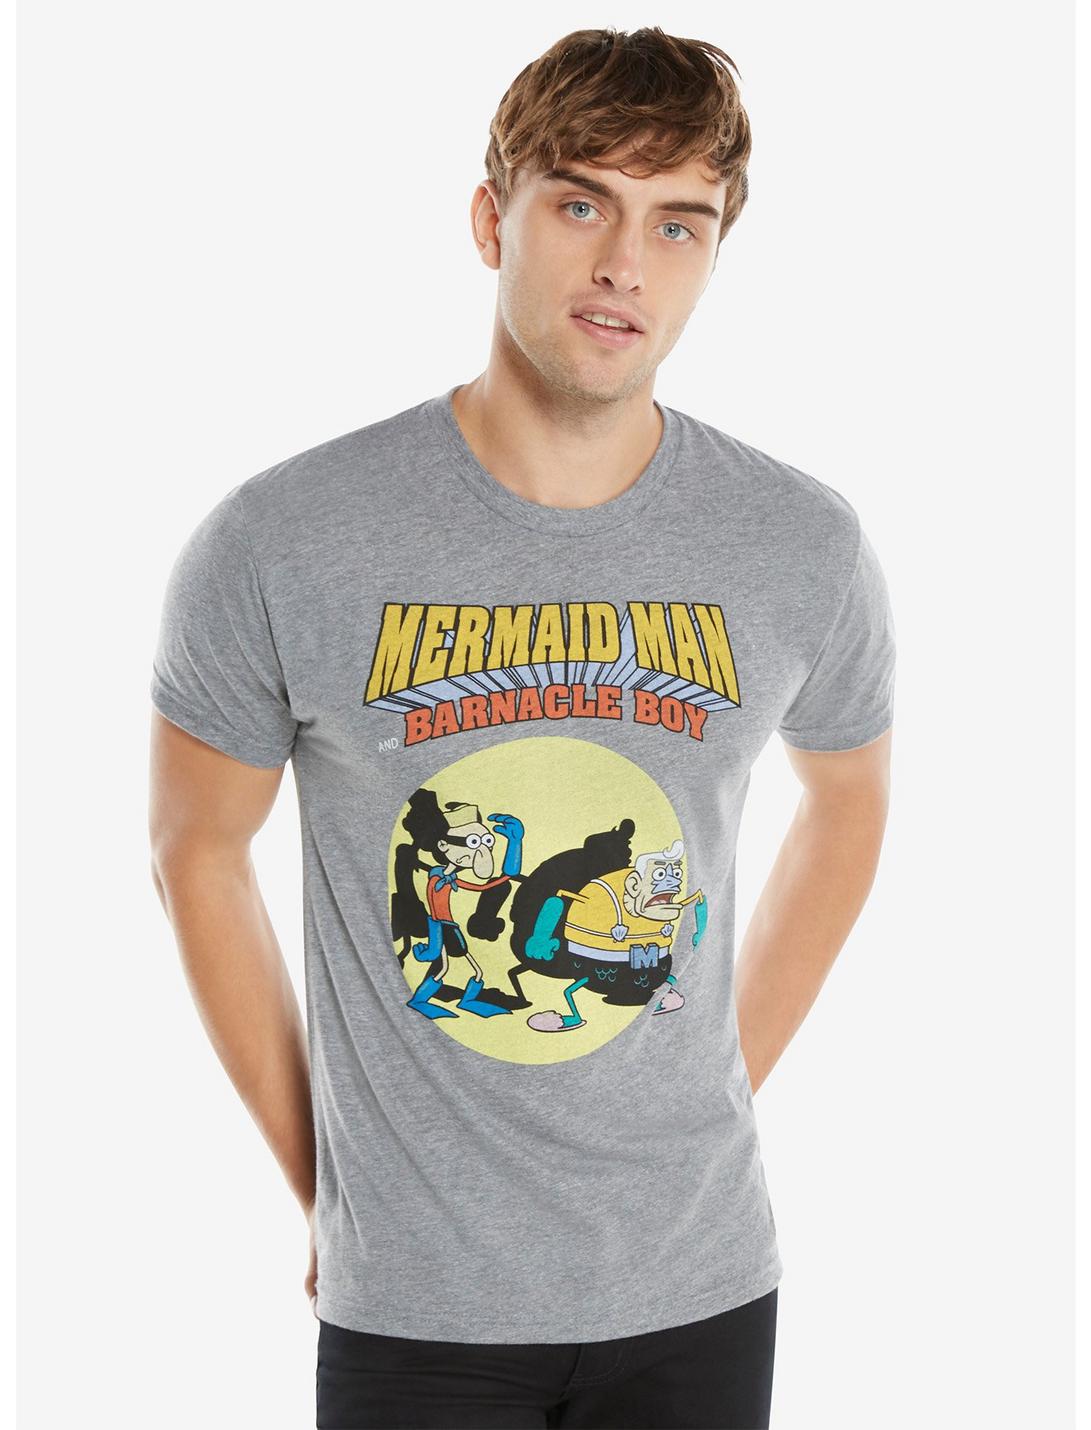 SpongeBob SquarePants Mermaid Man And Barnacle Boy T-Shirt, GREY, hi-res